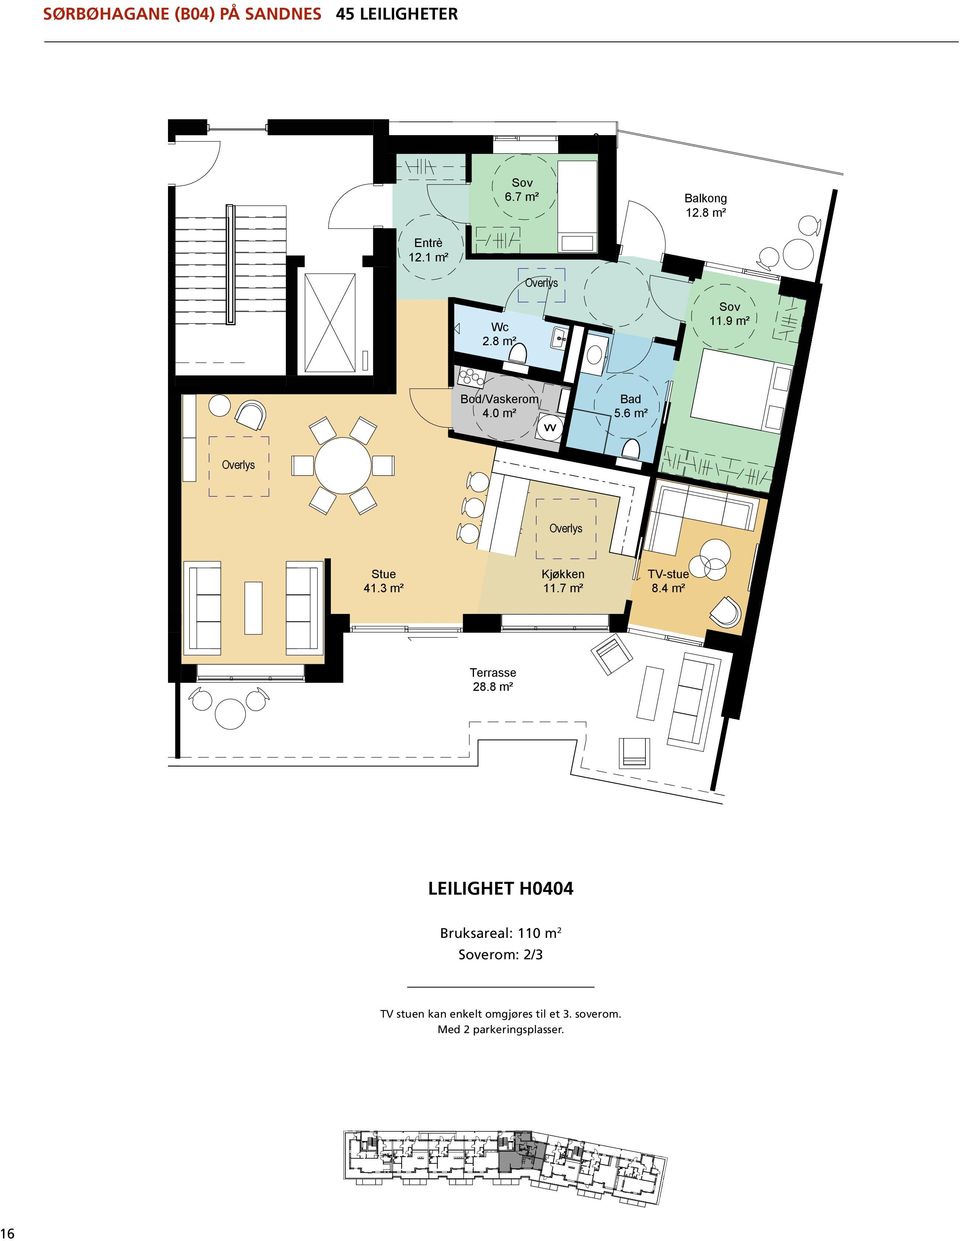 6 m² LEILIGHET H0404 Bruksareal: 110 m 2 Stue 41.3 m² erom: 2/3 Kjøkken 11.7 m² TV-stue 8.4 m² AREALER -leil.